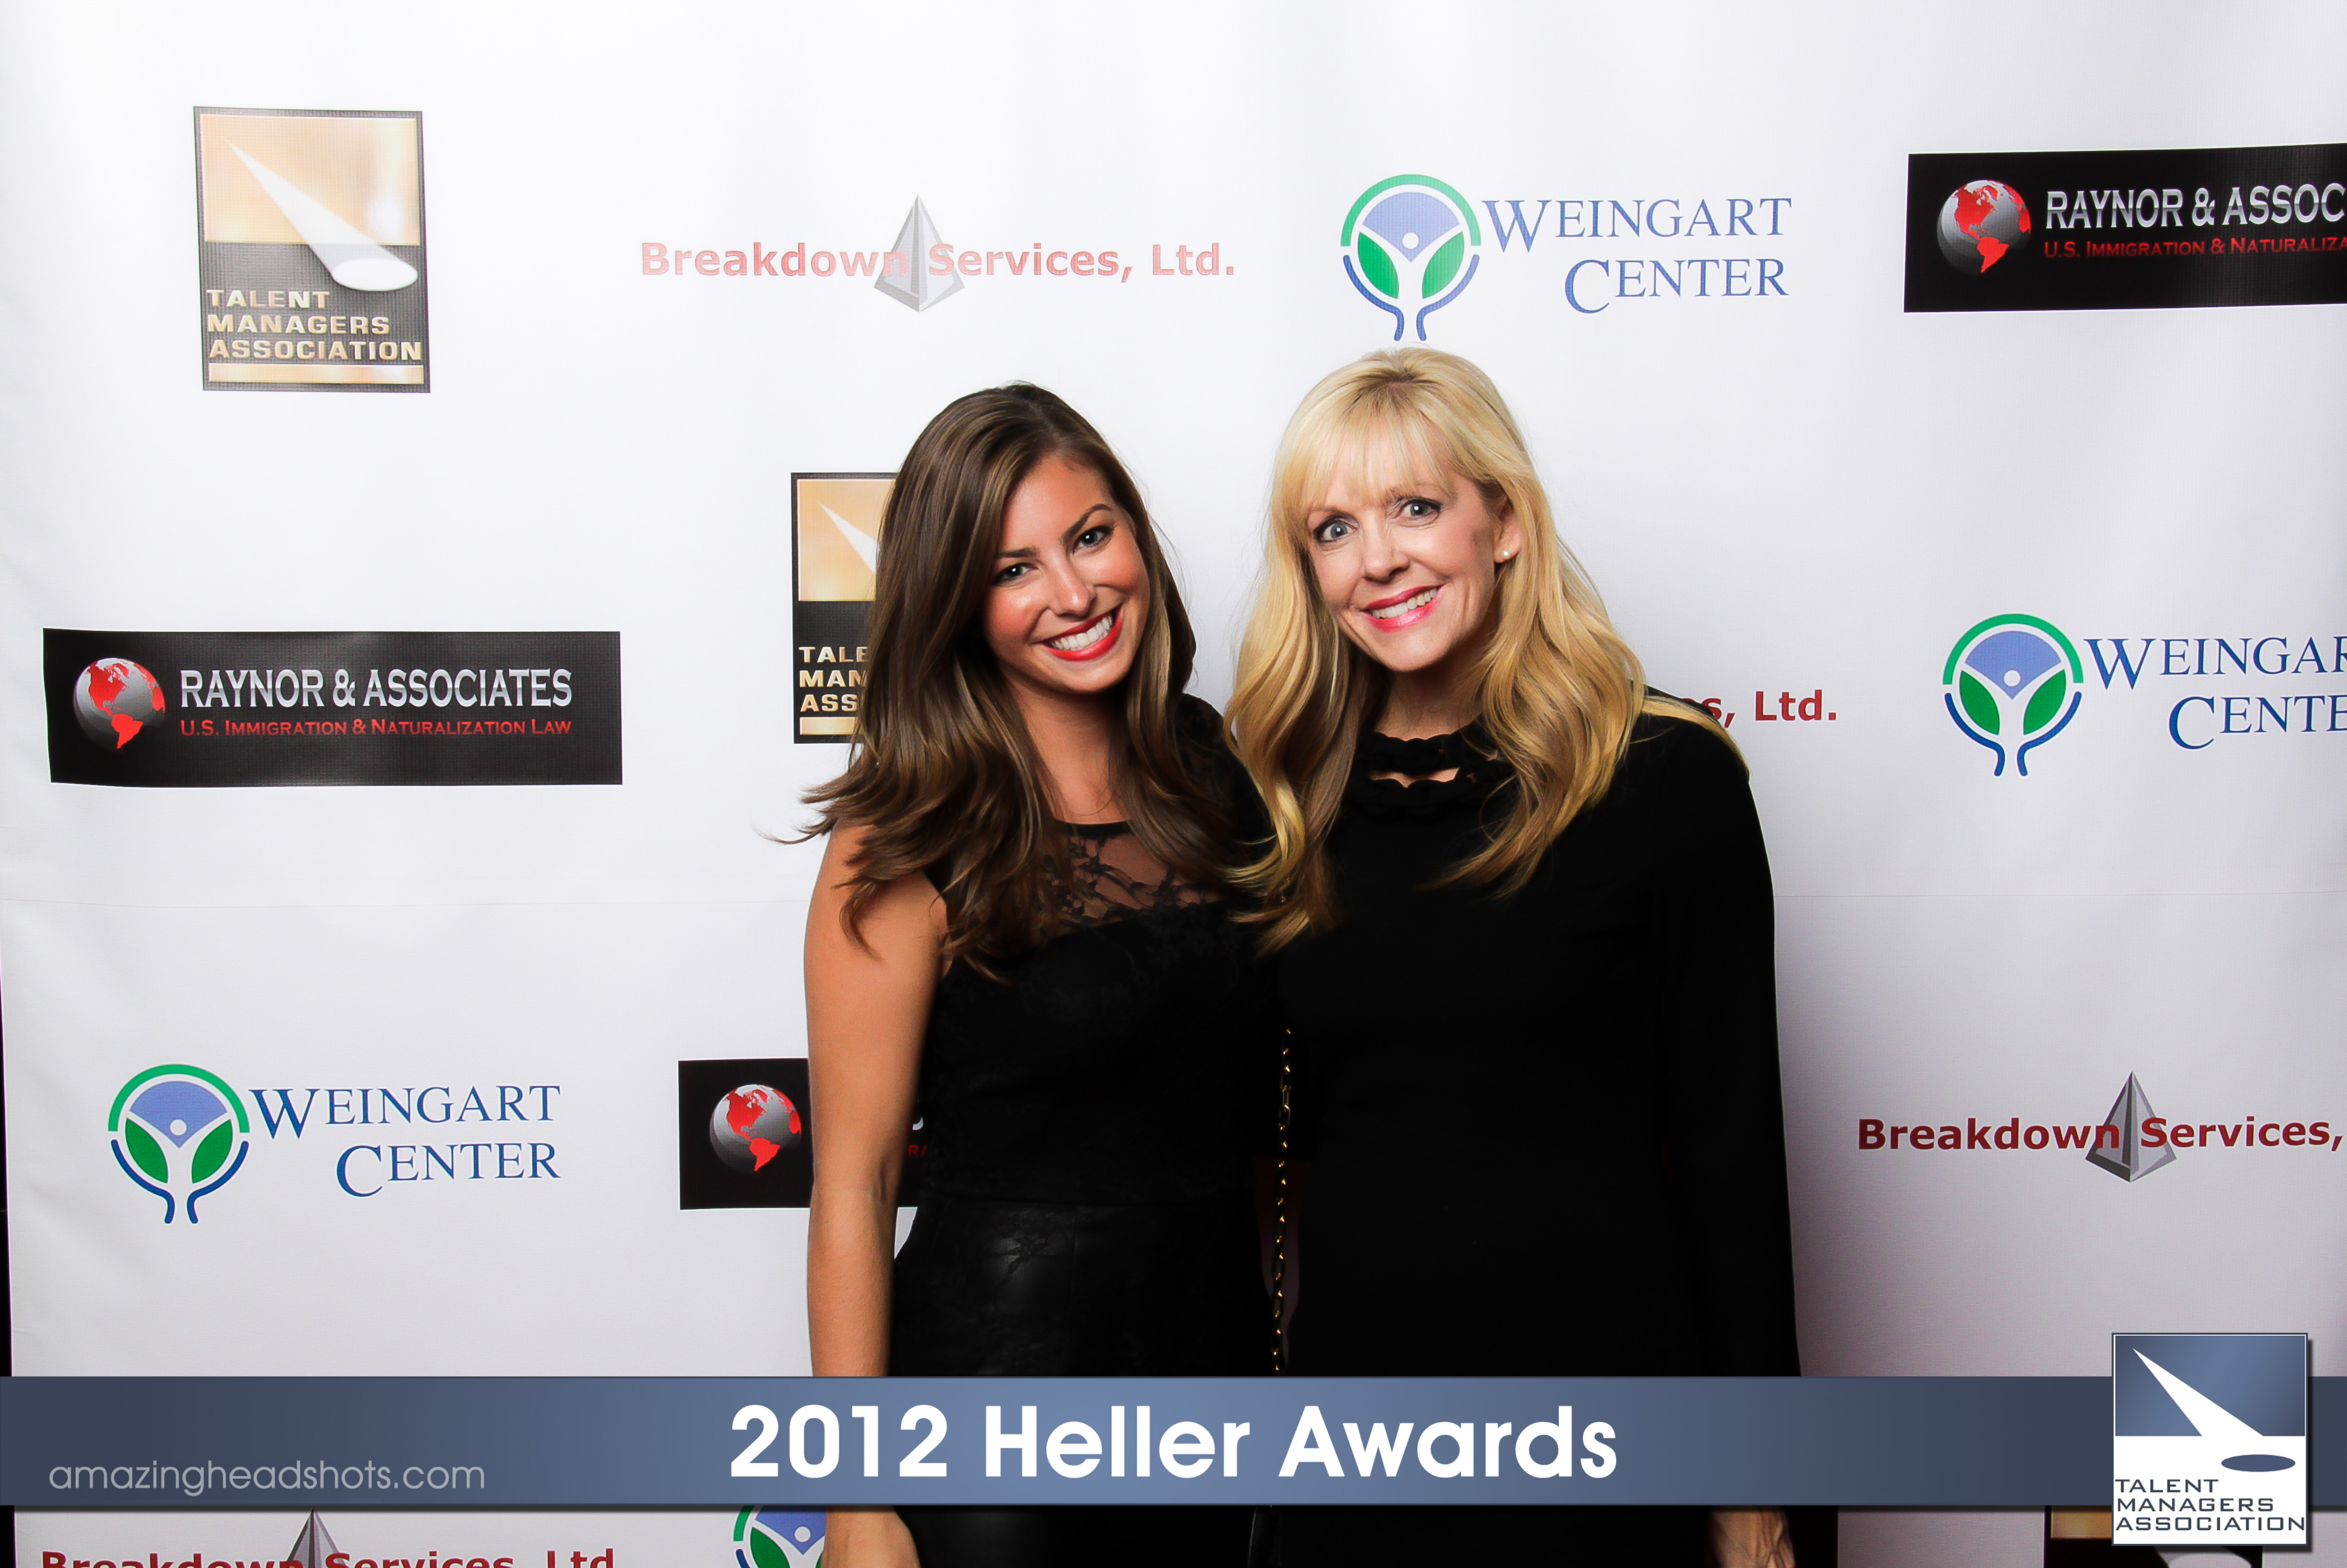 Lang Maddox and Daryn Simons at the 2012 Heller Awards